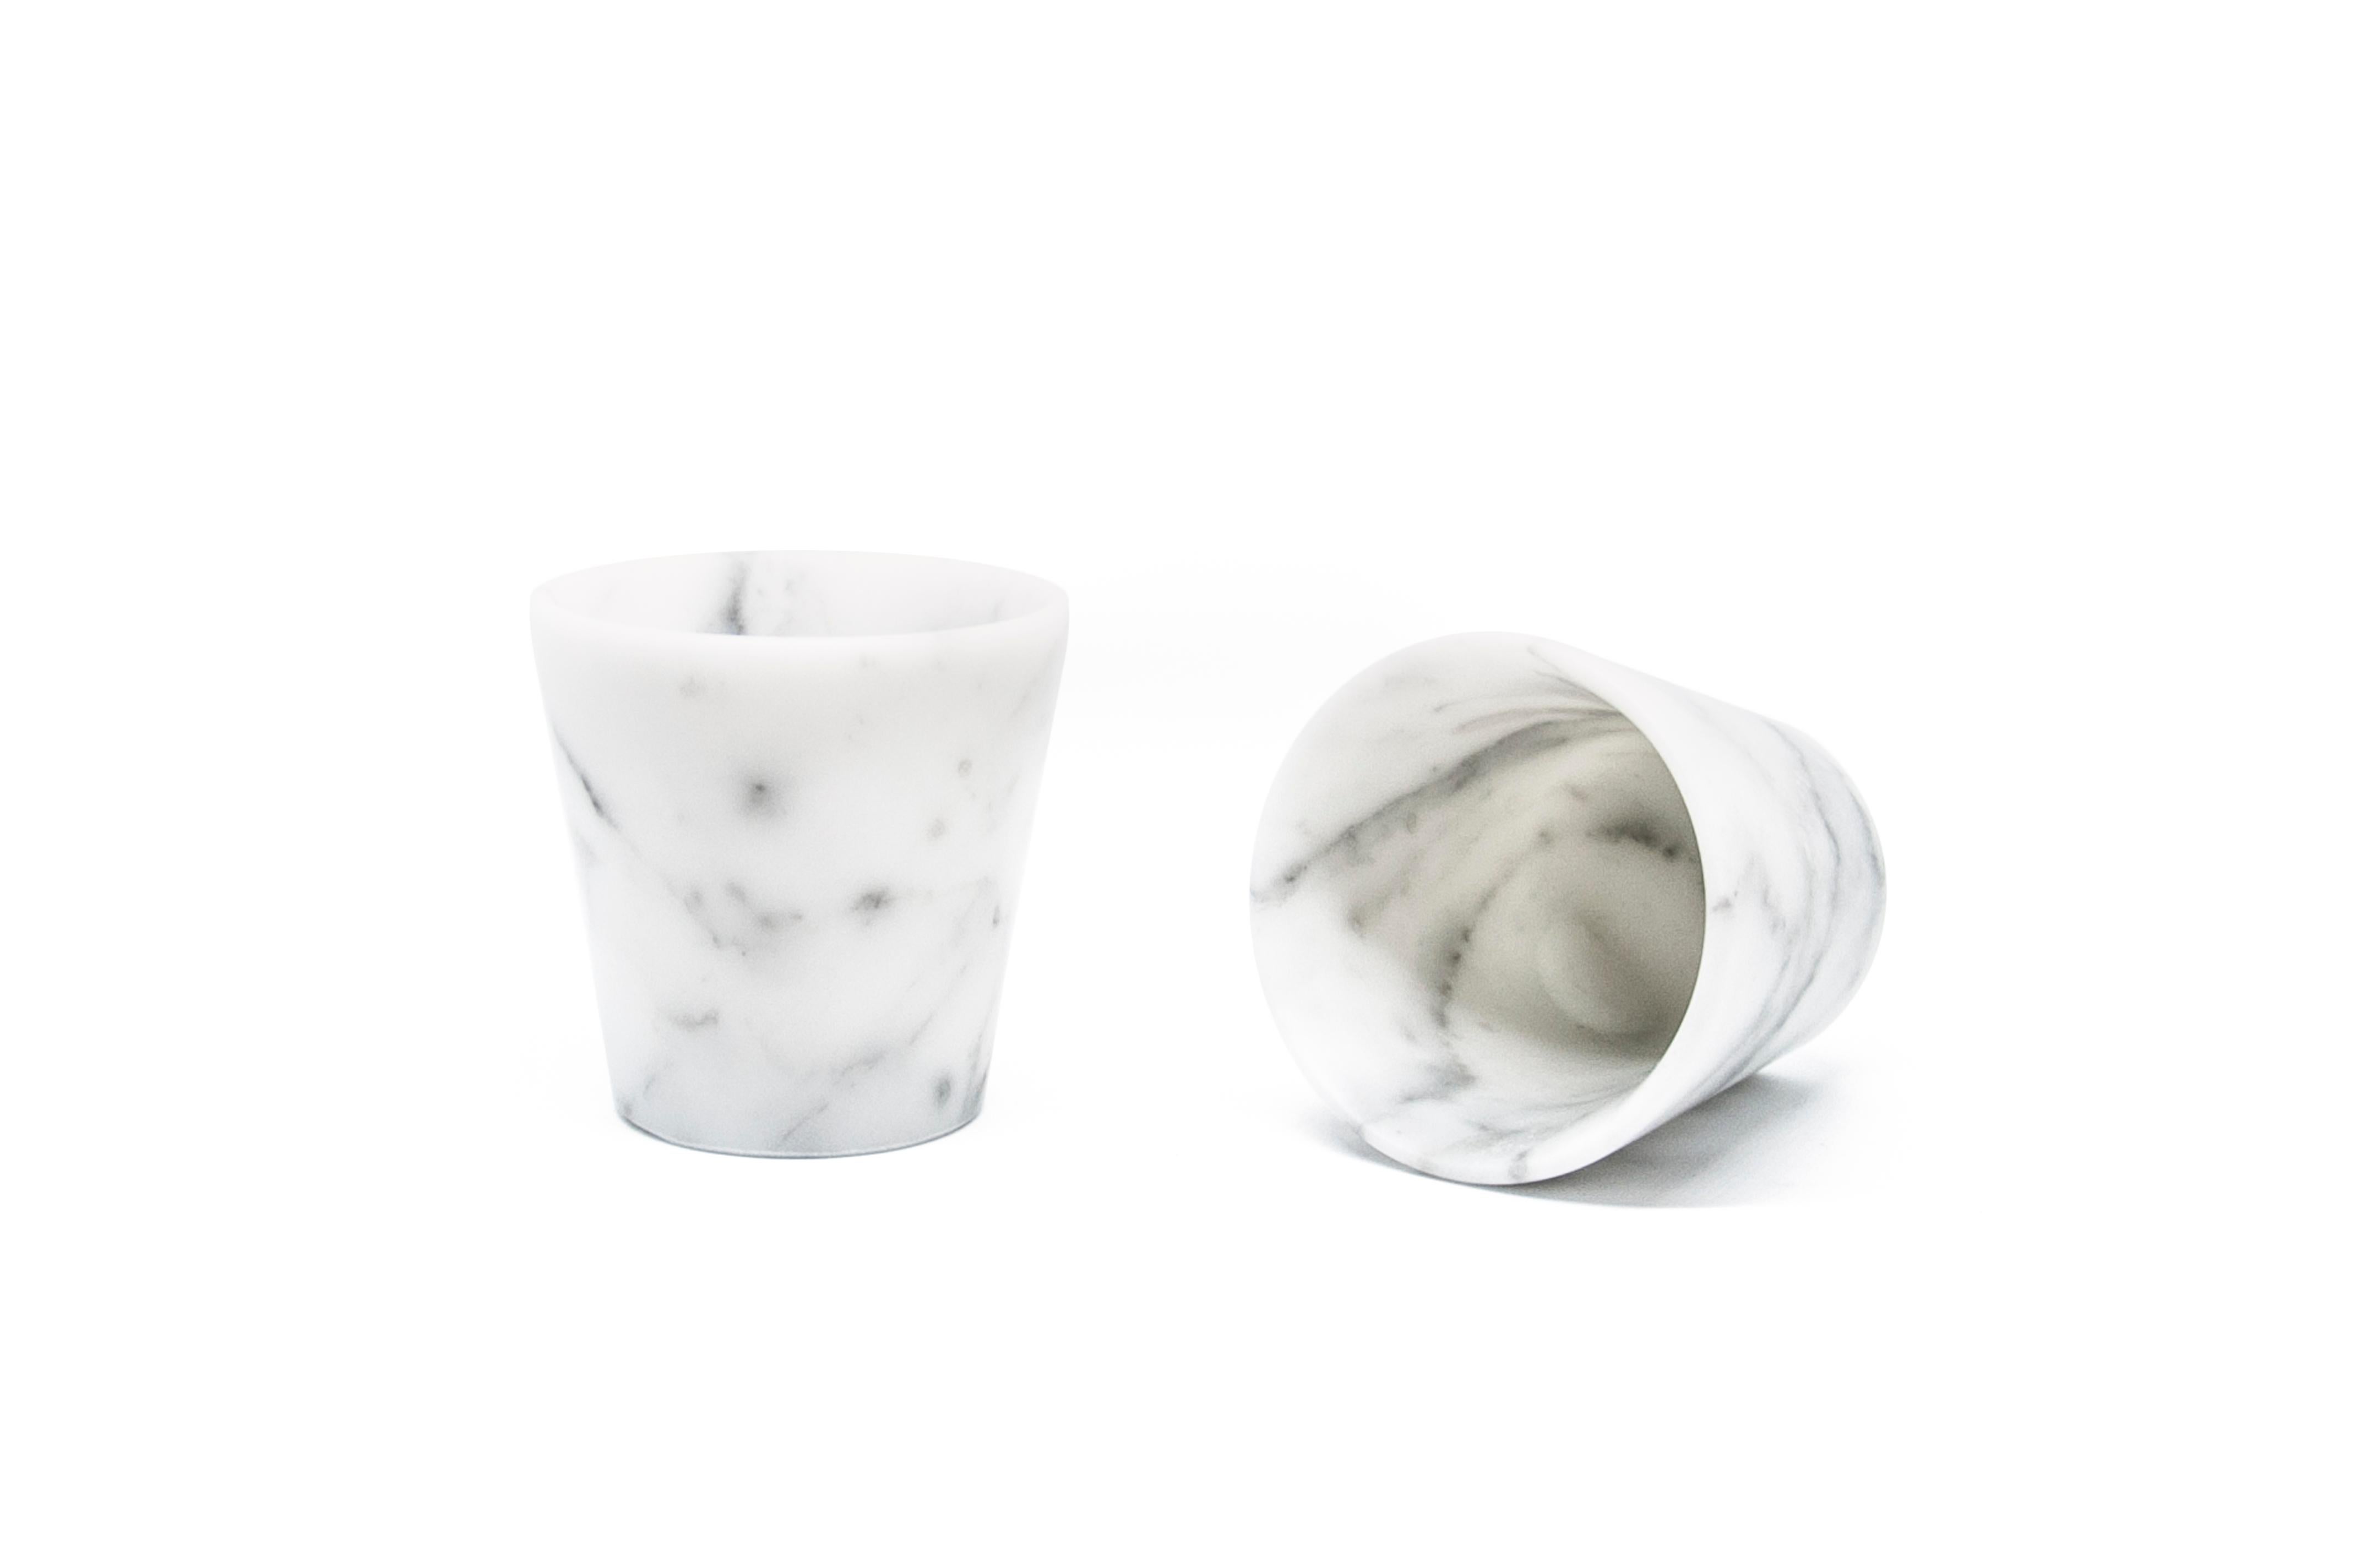 Set aus 2 Grappagläsern aus weißem, satiniertem Carrara-Marmor, der in Italien gewonnen und verarbeitet wird. Sie haben ein 100% in Italien hergestelltes Produkt.
Jedes Stück ist in gewisser Weise einzigartig (da jeder Marmorblock eine andere